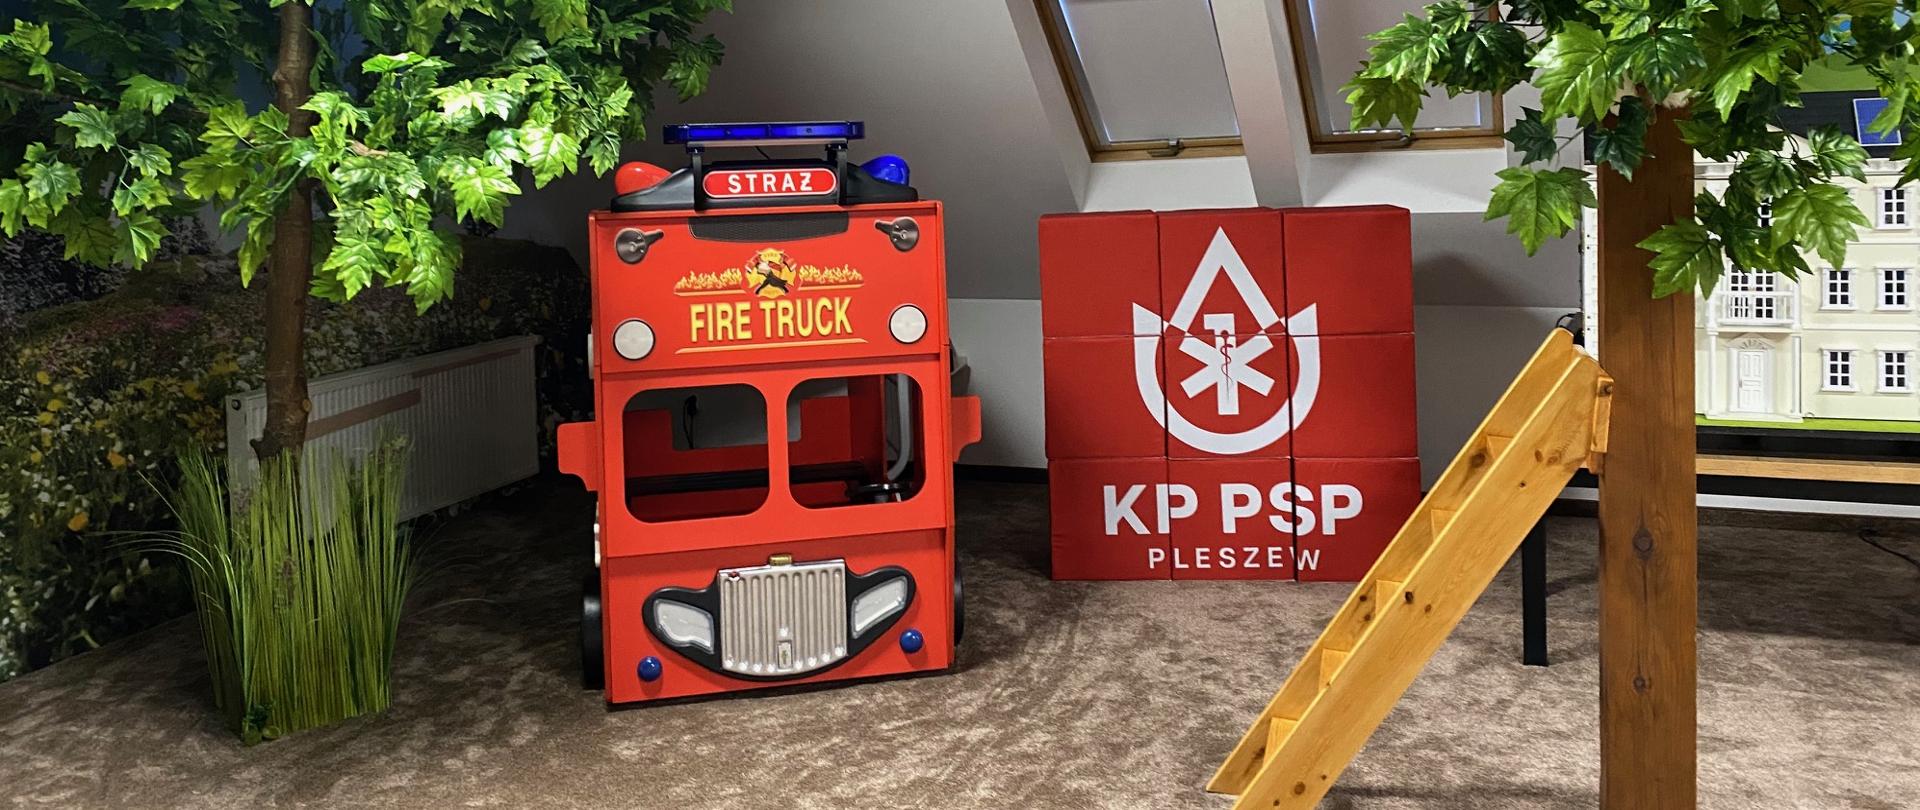 Imitacja samochodu strażackiego dla dzieci. Sztuczne drzewka oraz drabinka oparta o jedno z nich.